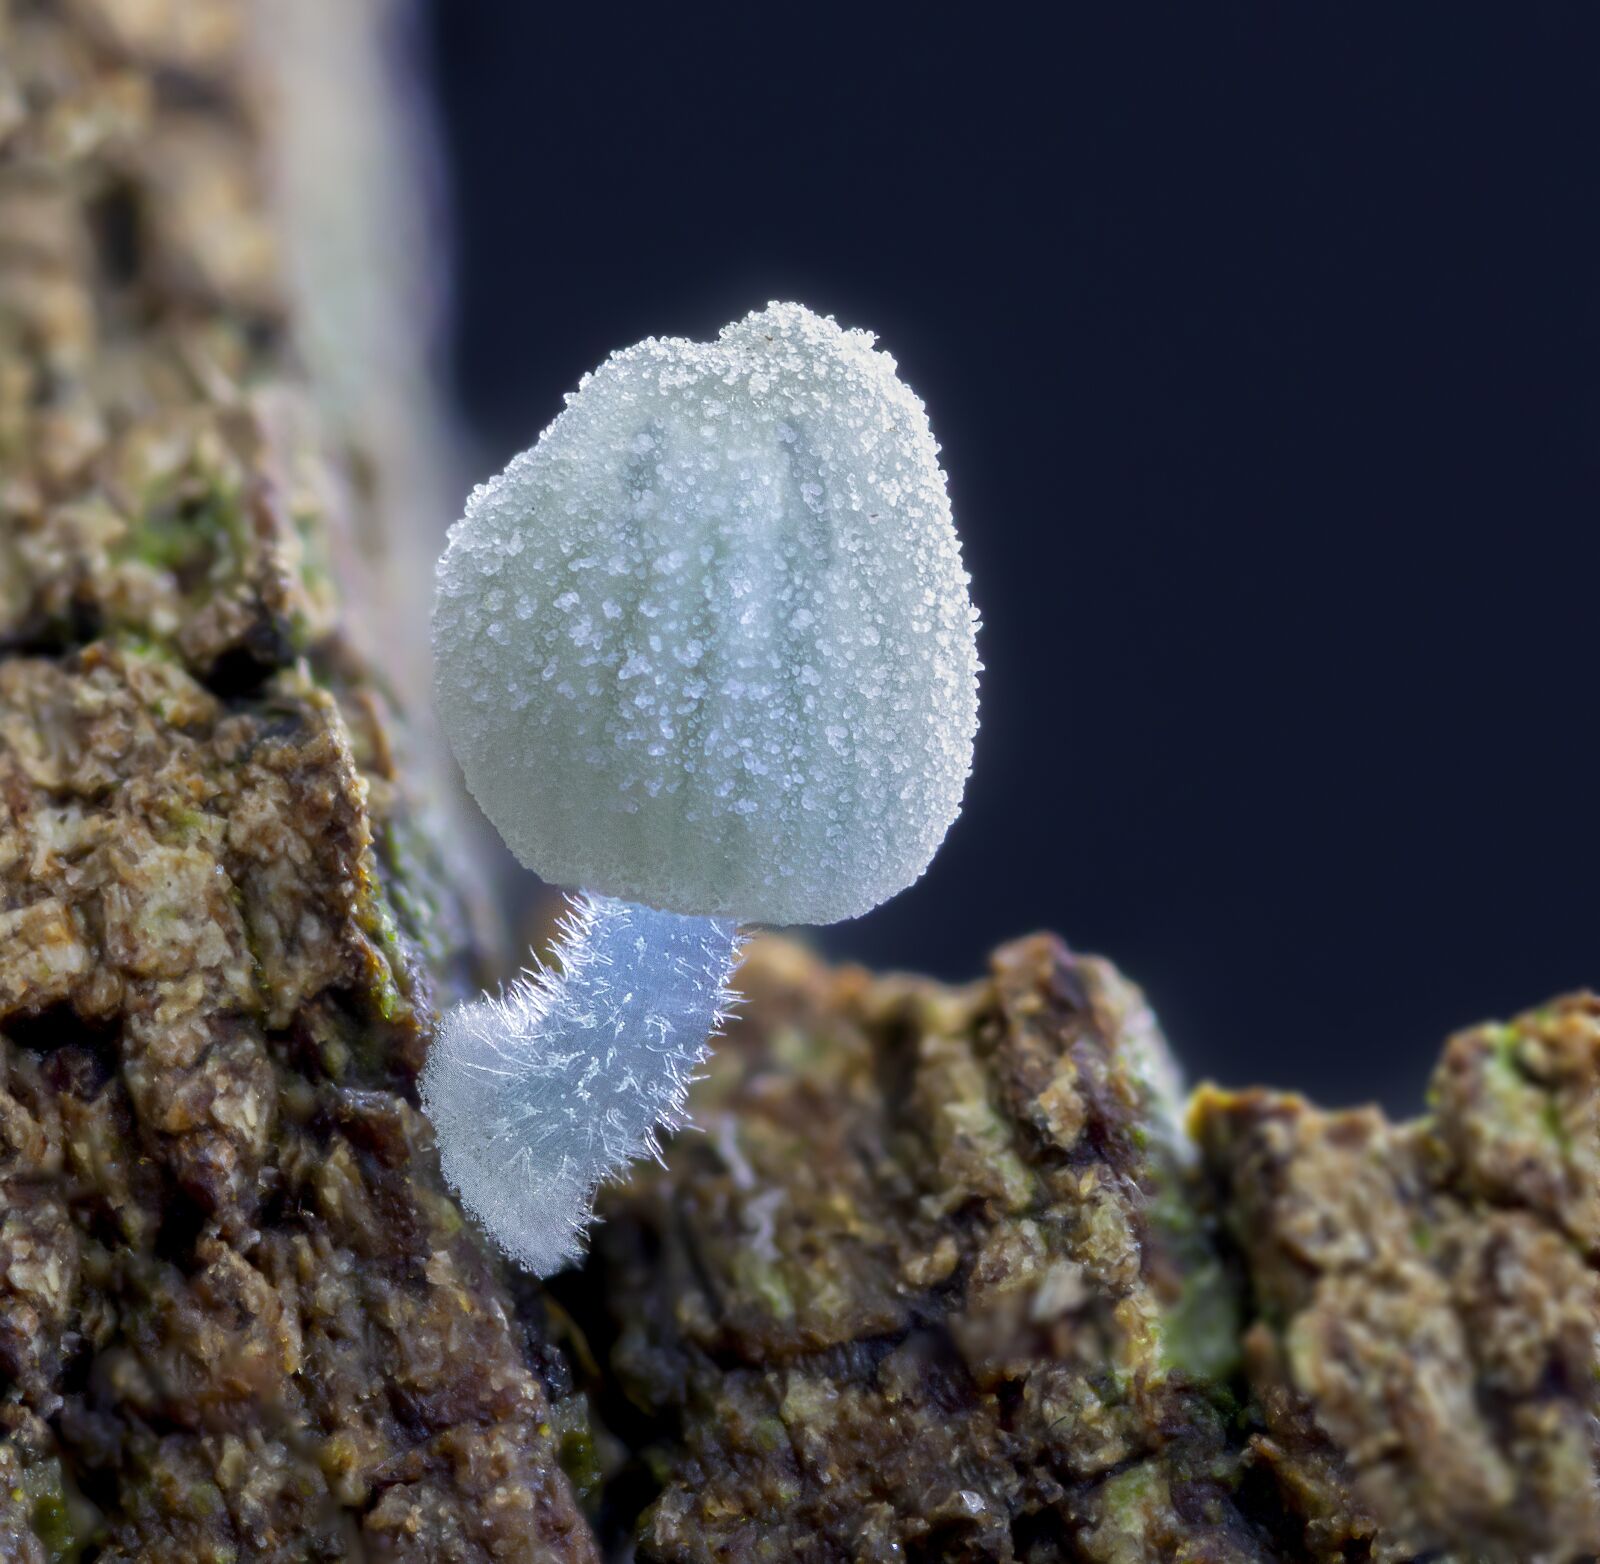 Canon MP-E 65mm F2.5 1-5x Macro Photo sample photo. Fungi, mushroom, miniature photography